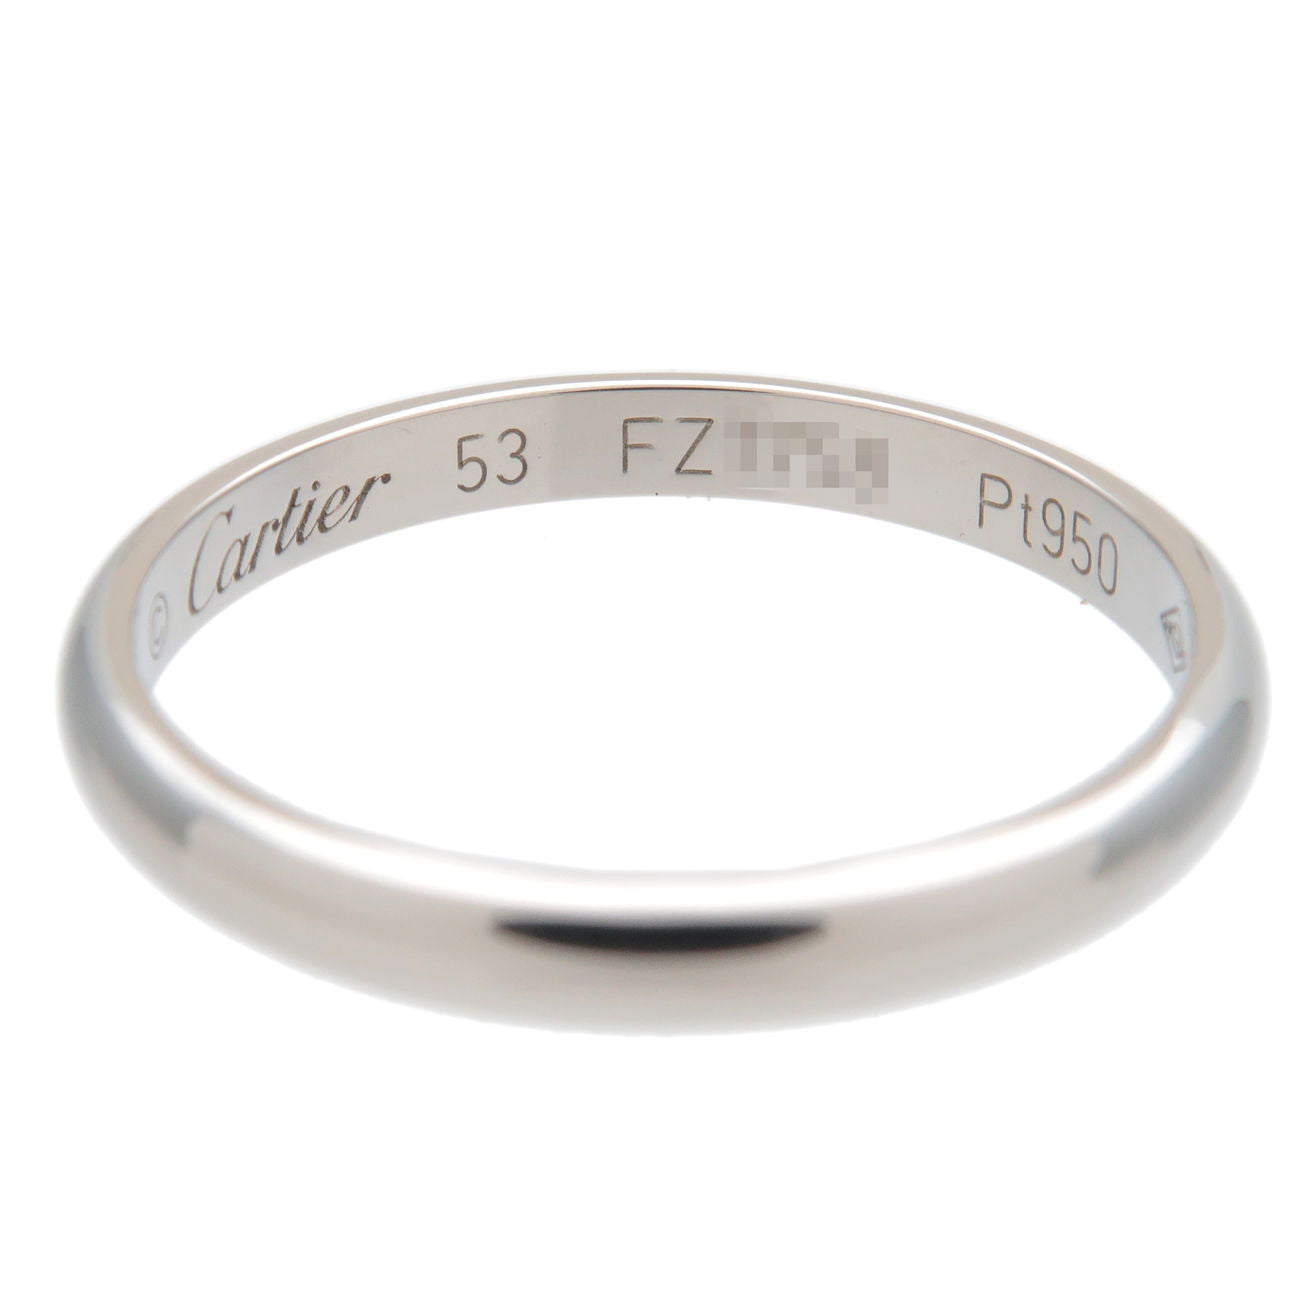 Cartier Wedding Ring PT950 Platinum #53 US6.5 EU53